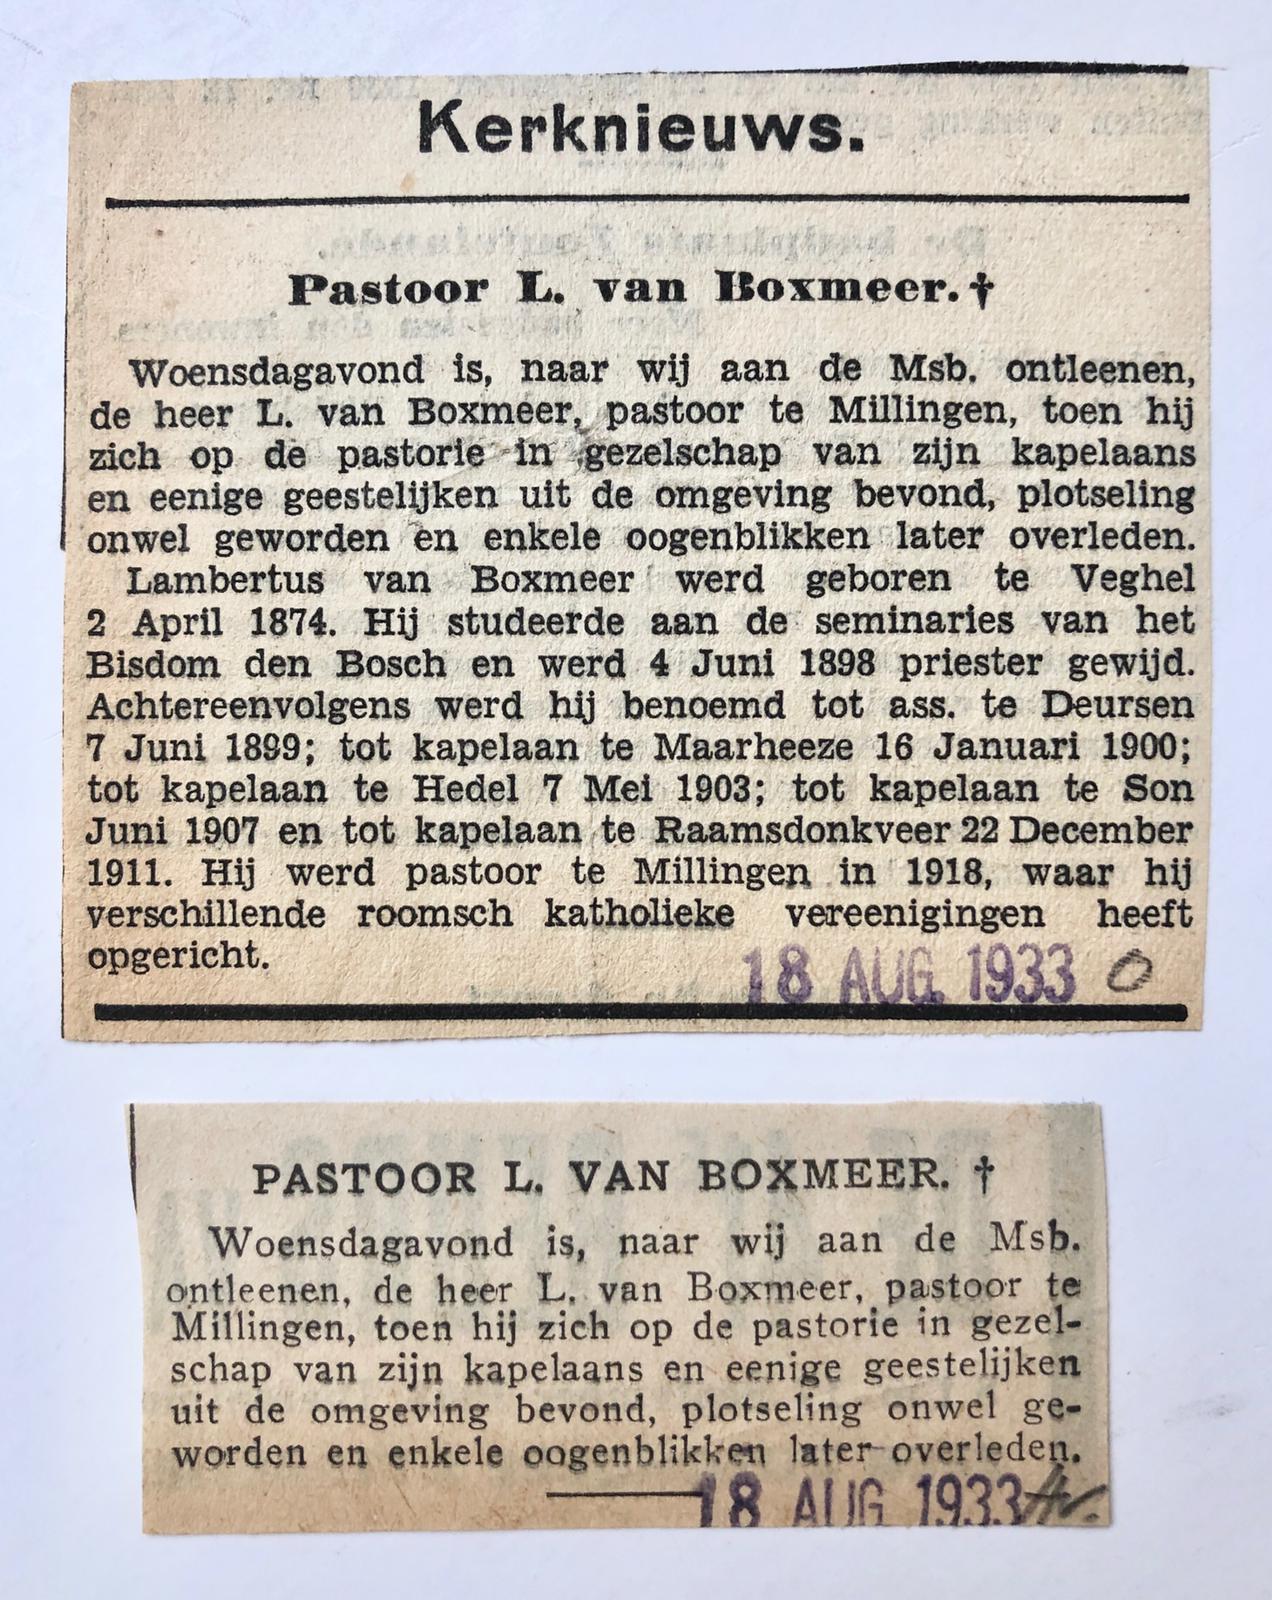 [Newspaper articles 1933] Twee krantenknipsels betr het overlijden van pastoor L. van Boxmeer, 1933.